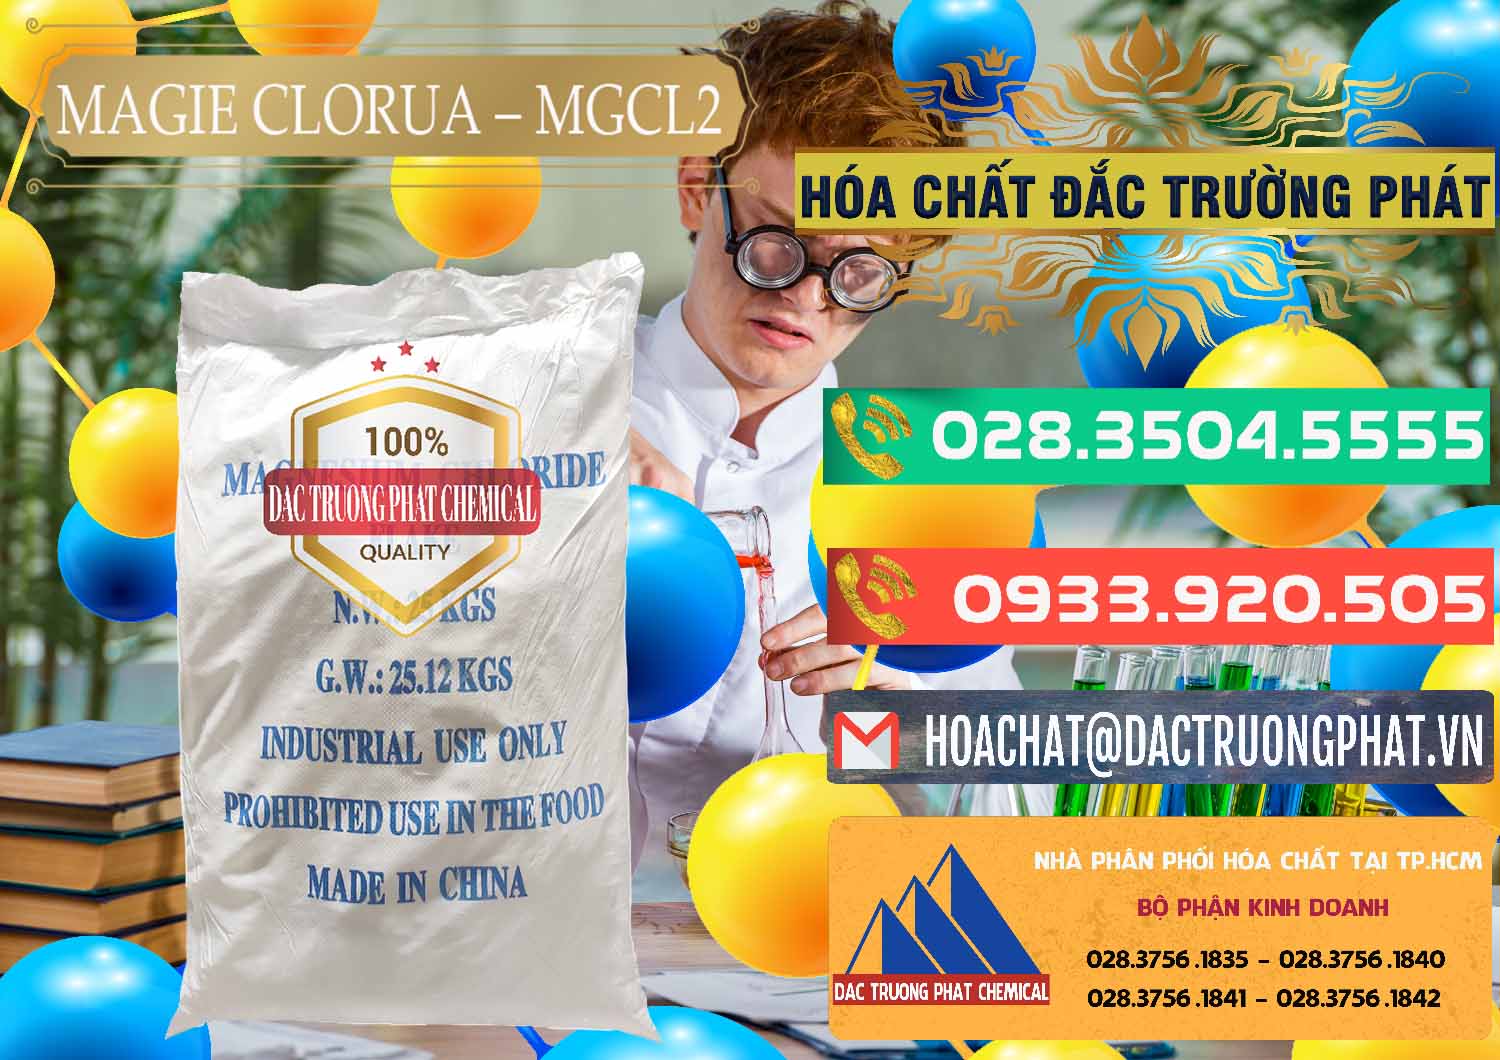 Cung cấp ( bán ) Magie Clorua – MGCL2 96% Dạng Vảy Trung Quốc China - 0091 - Cty chuyên bán - phân phối hóa chất tại TP.HCM - congtyhoachat.com.vn